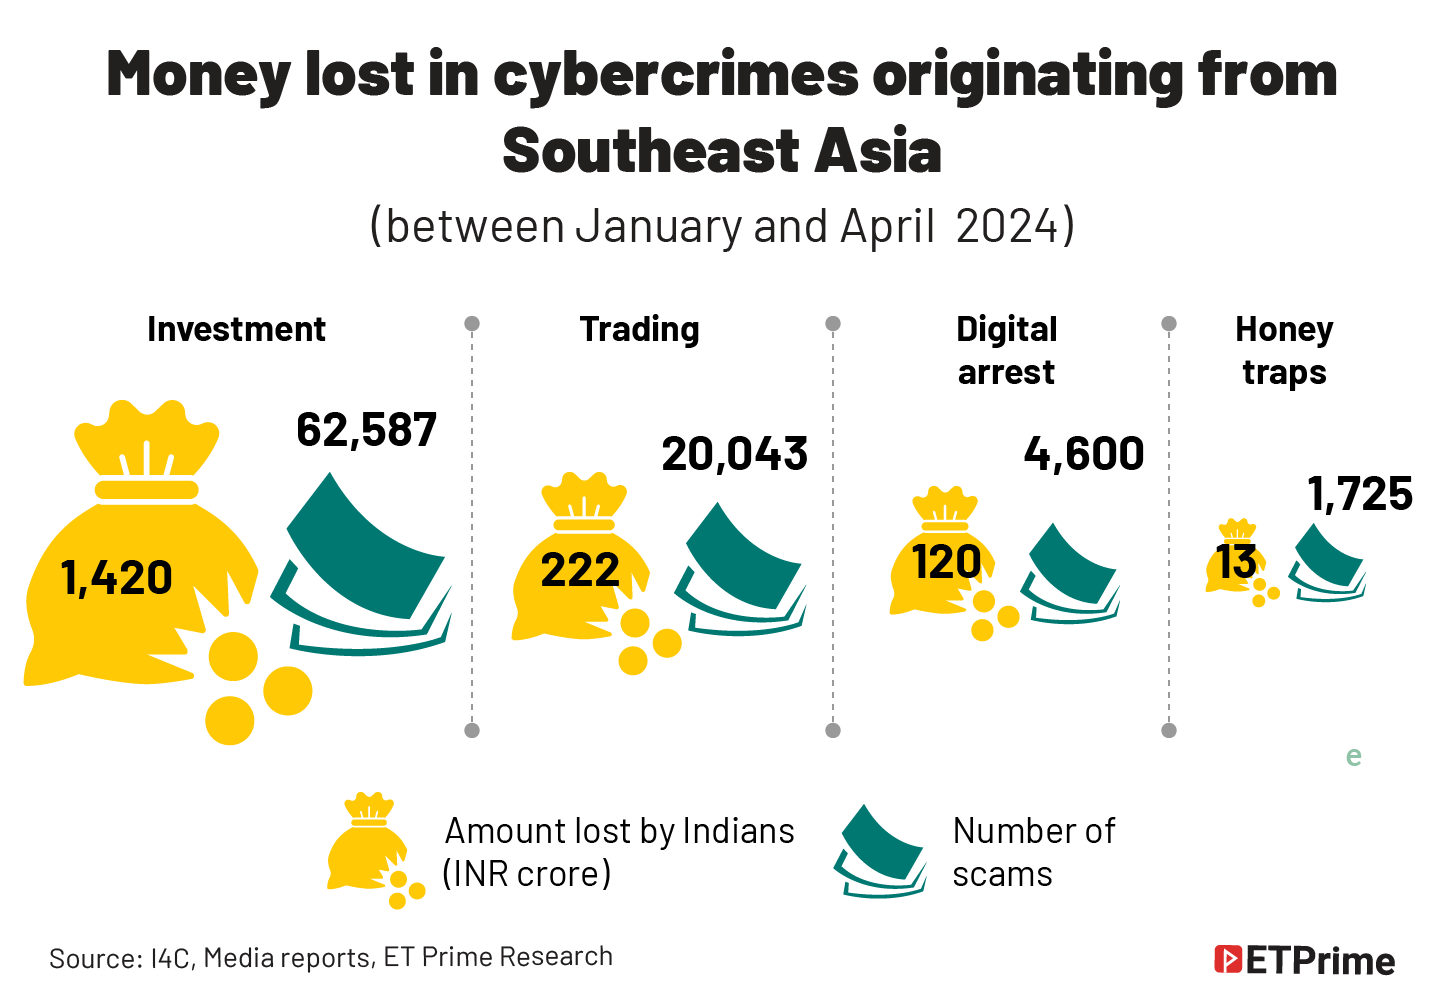 Money lost in cybercrimes@2x